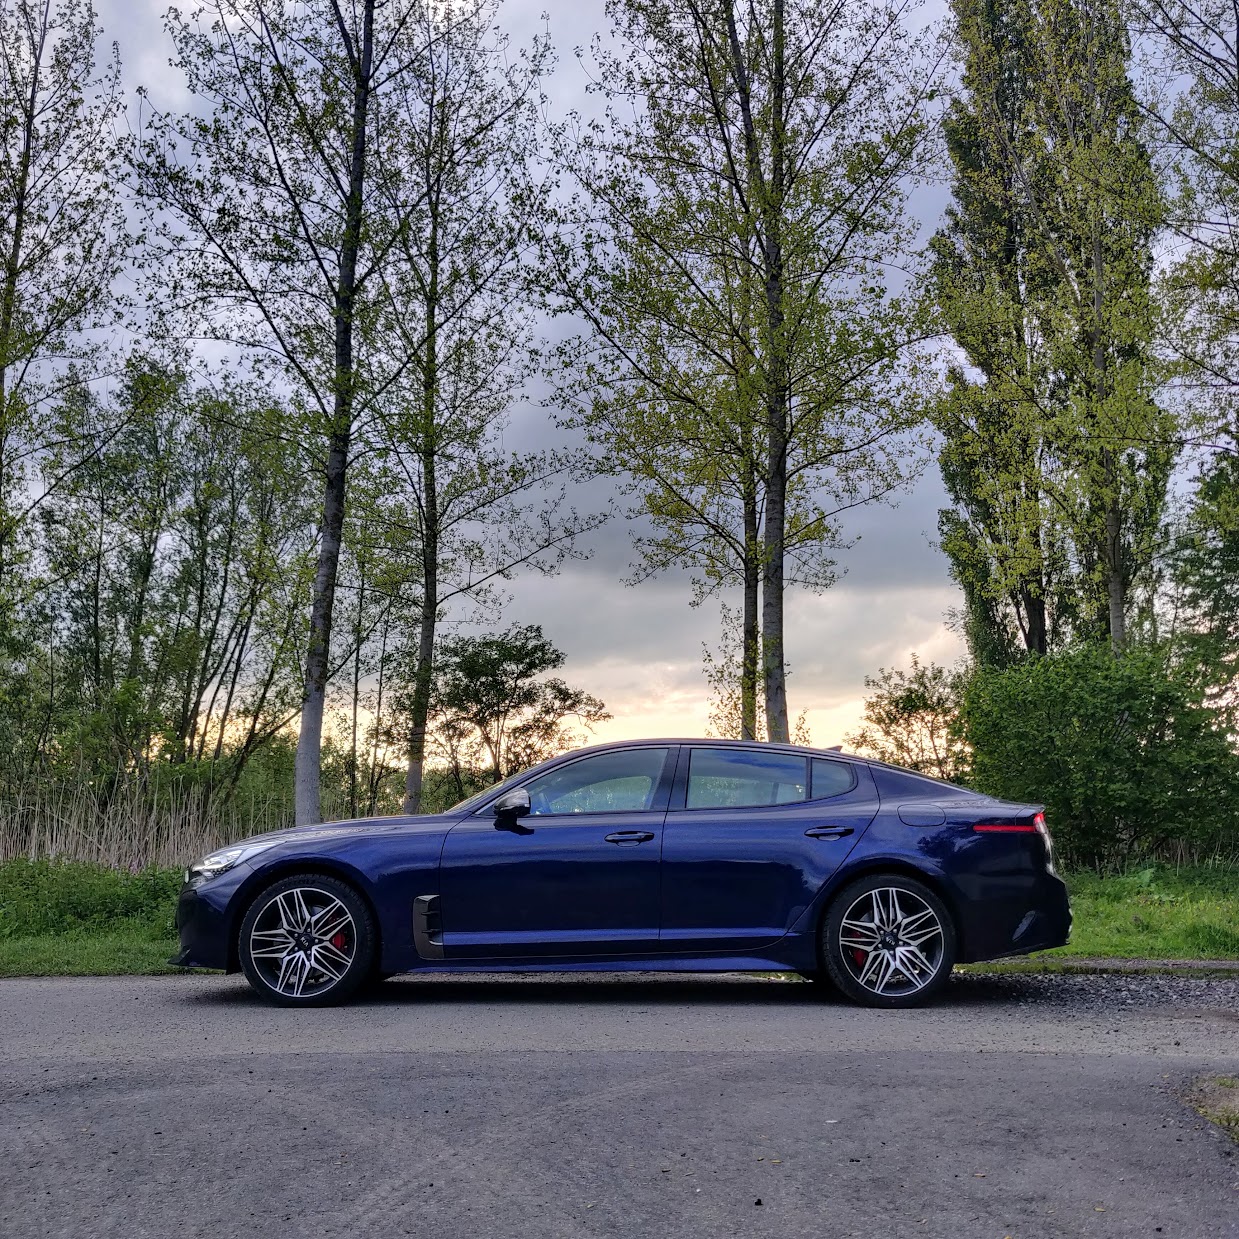 Test 2021 Kia Stinger GT facelift - Review AutoGids